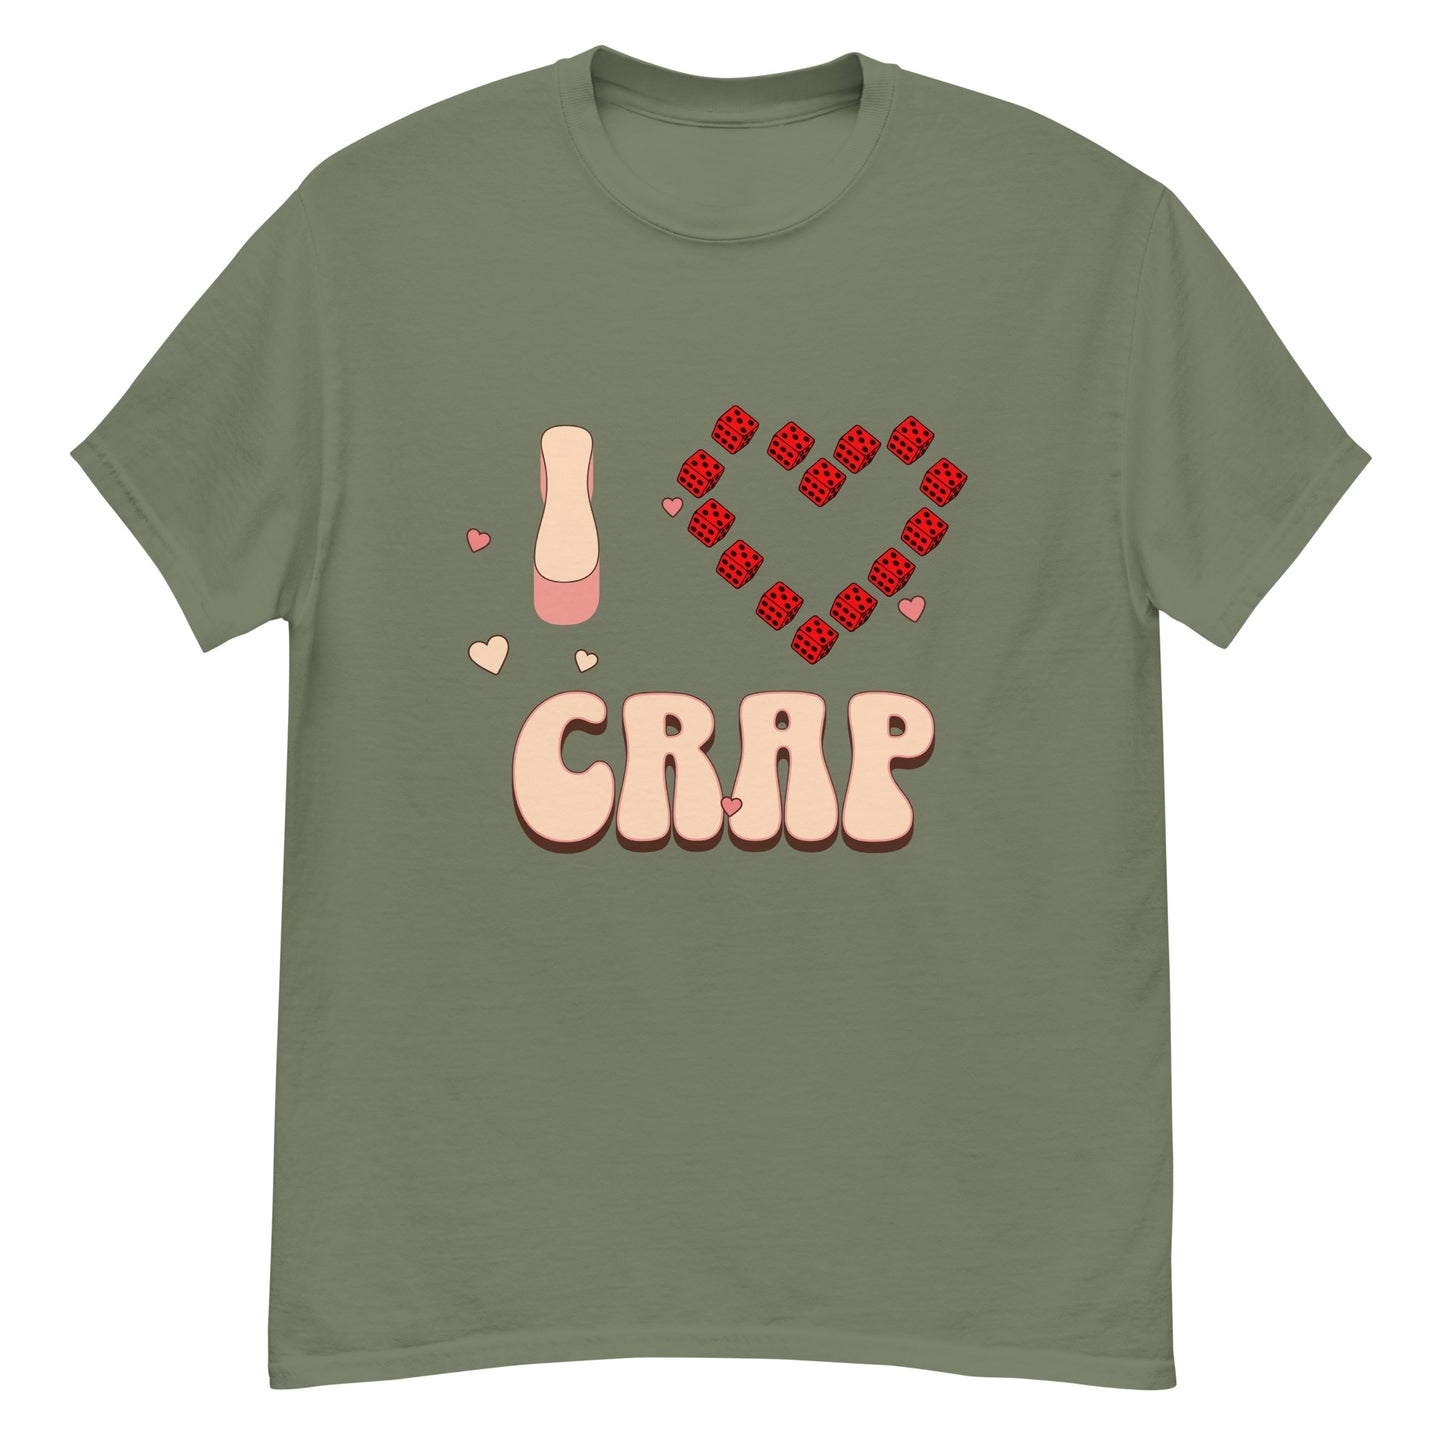 I Love Craps